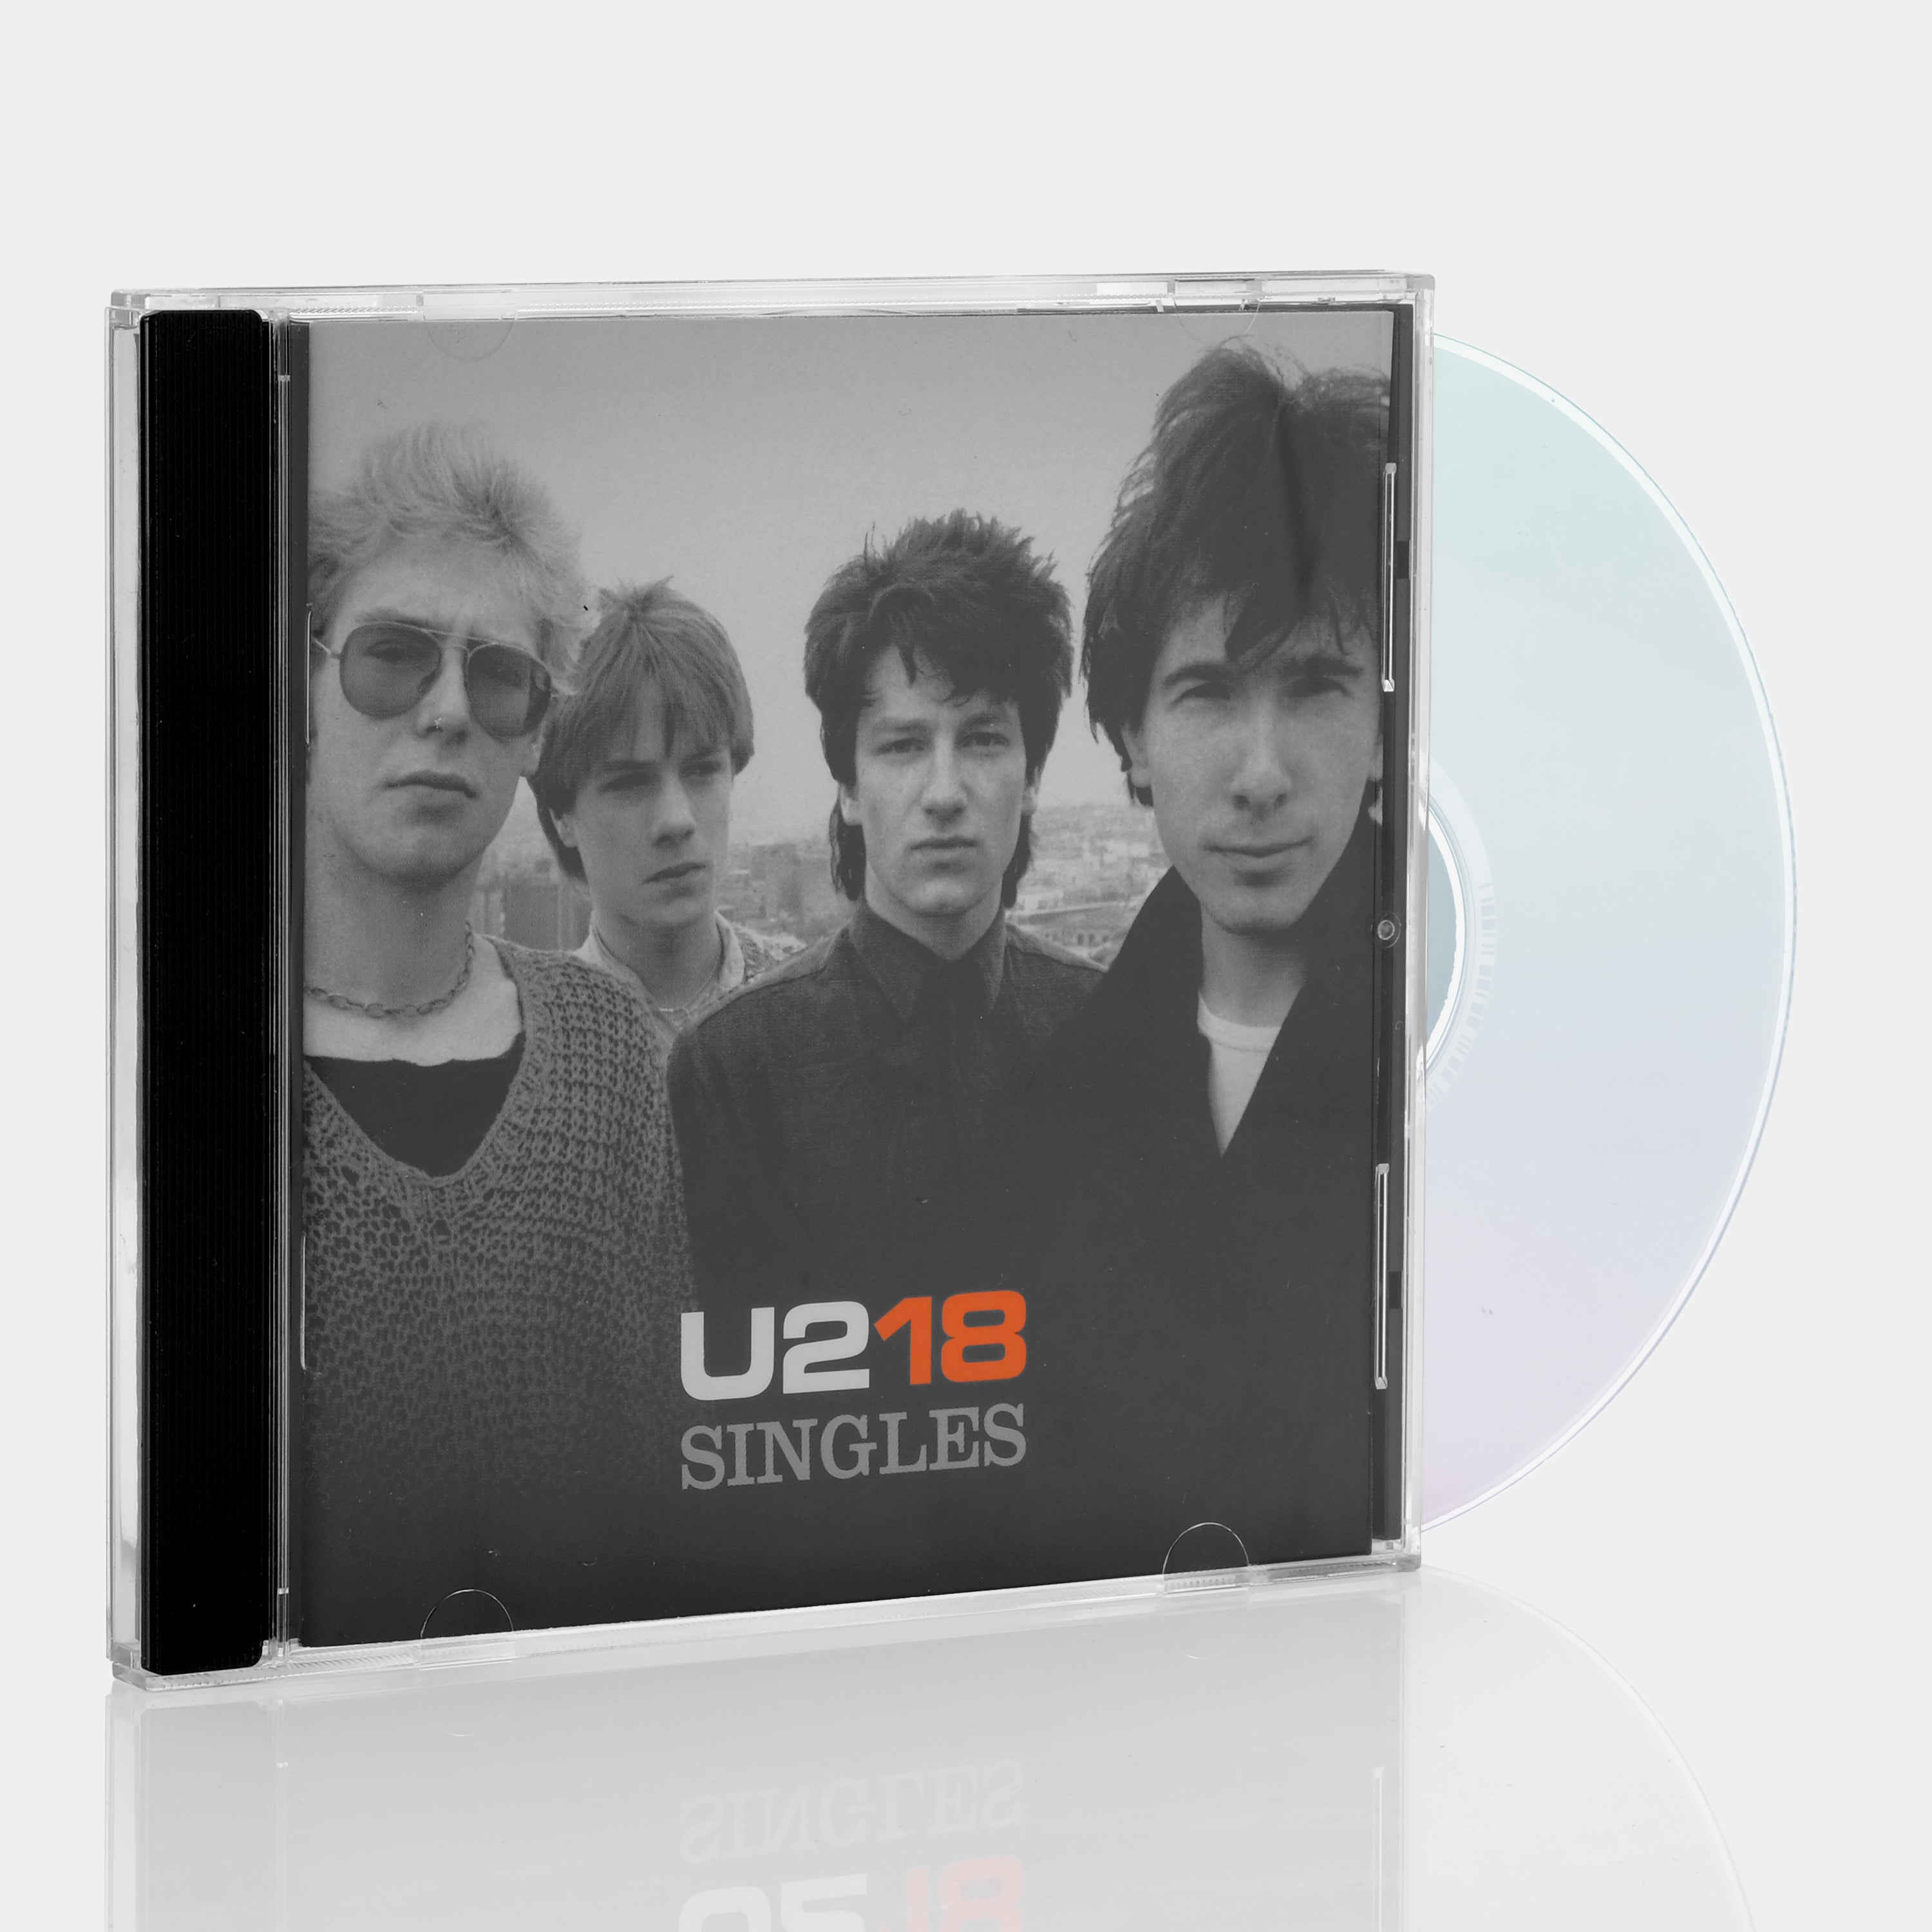 U2 - U218 Singles CD